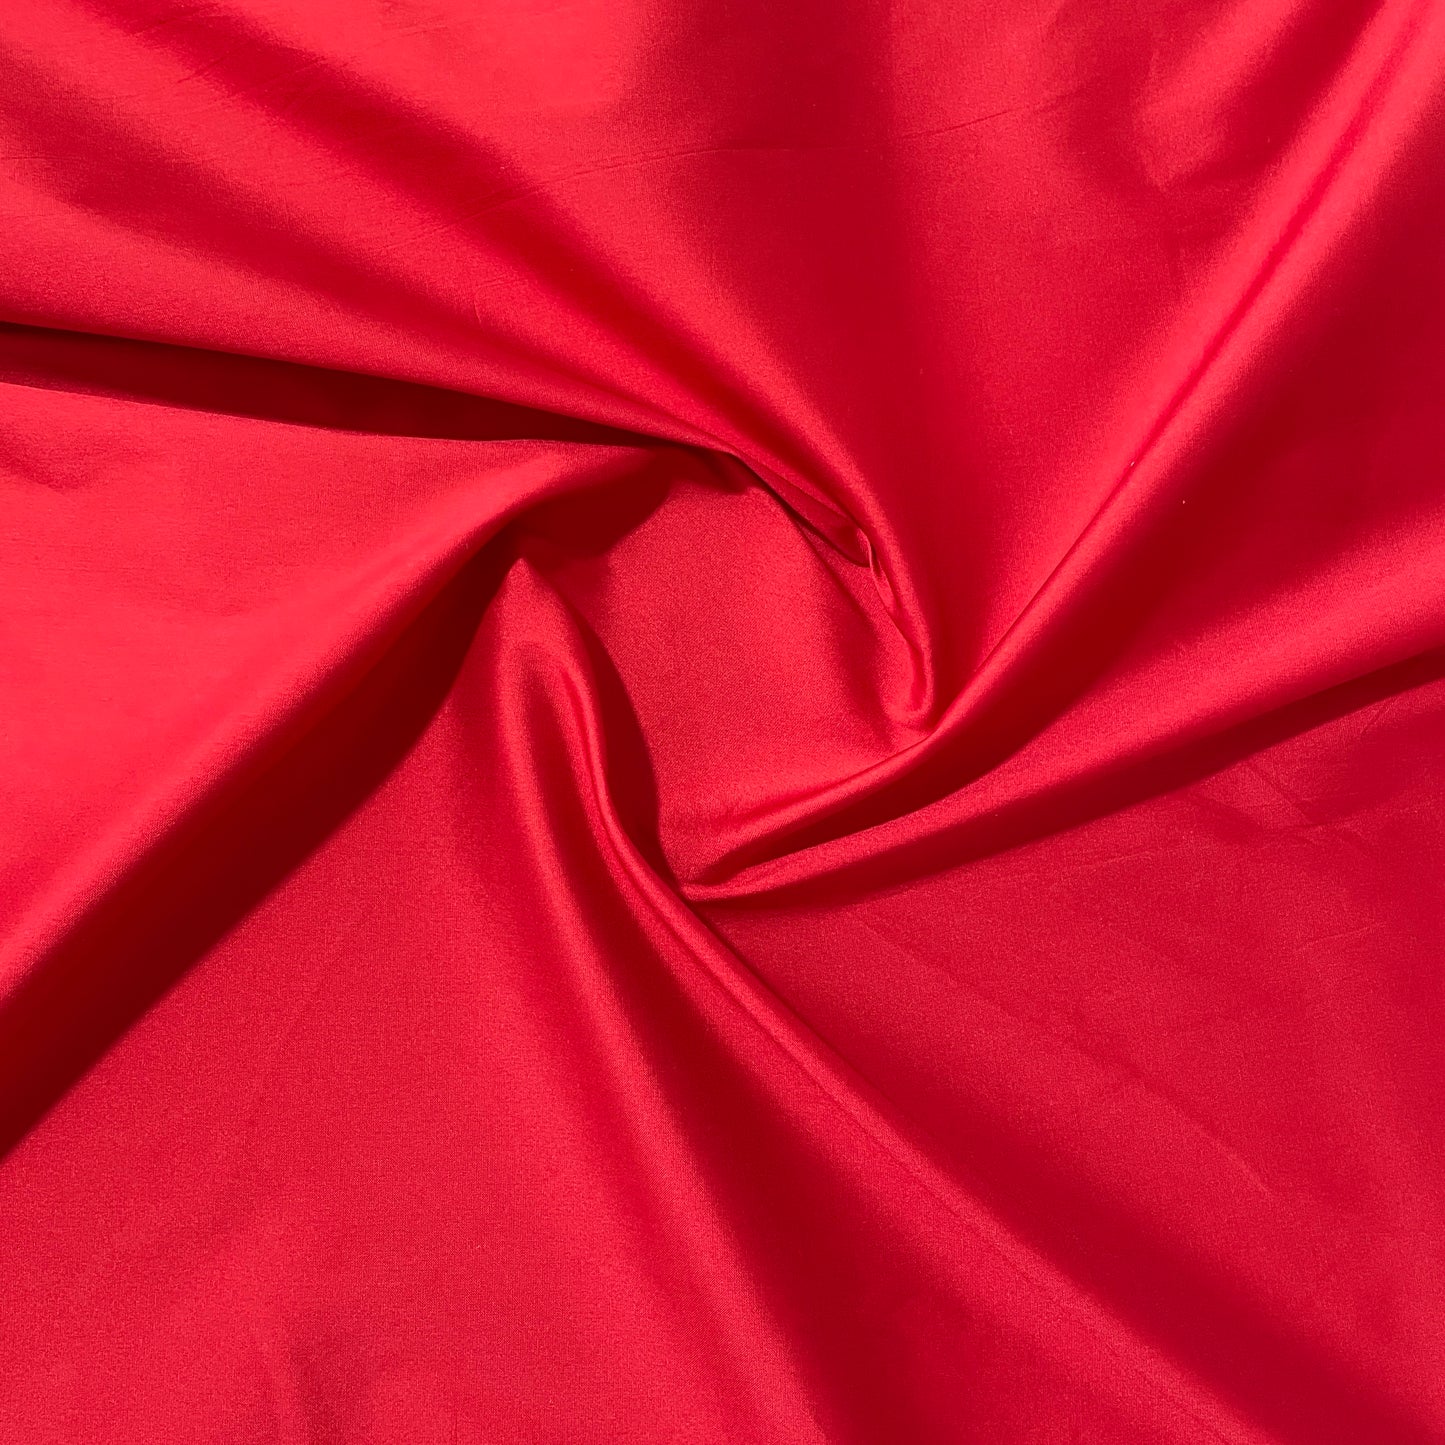 TS-7043: Red Gold Silk Taffeta Fabric 100% Silk - Silks Unlimited